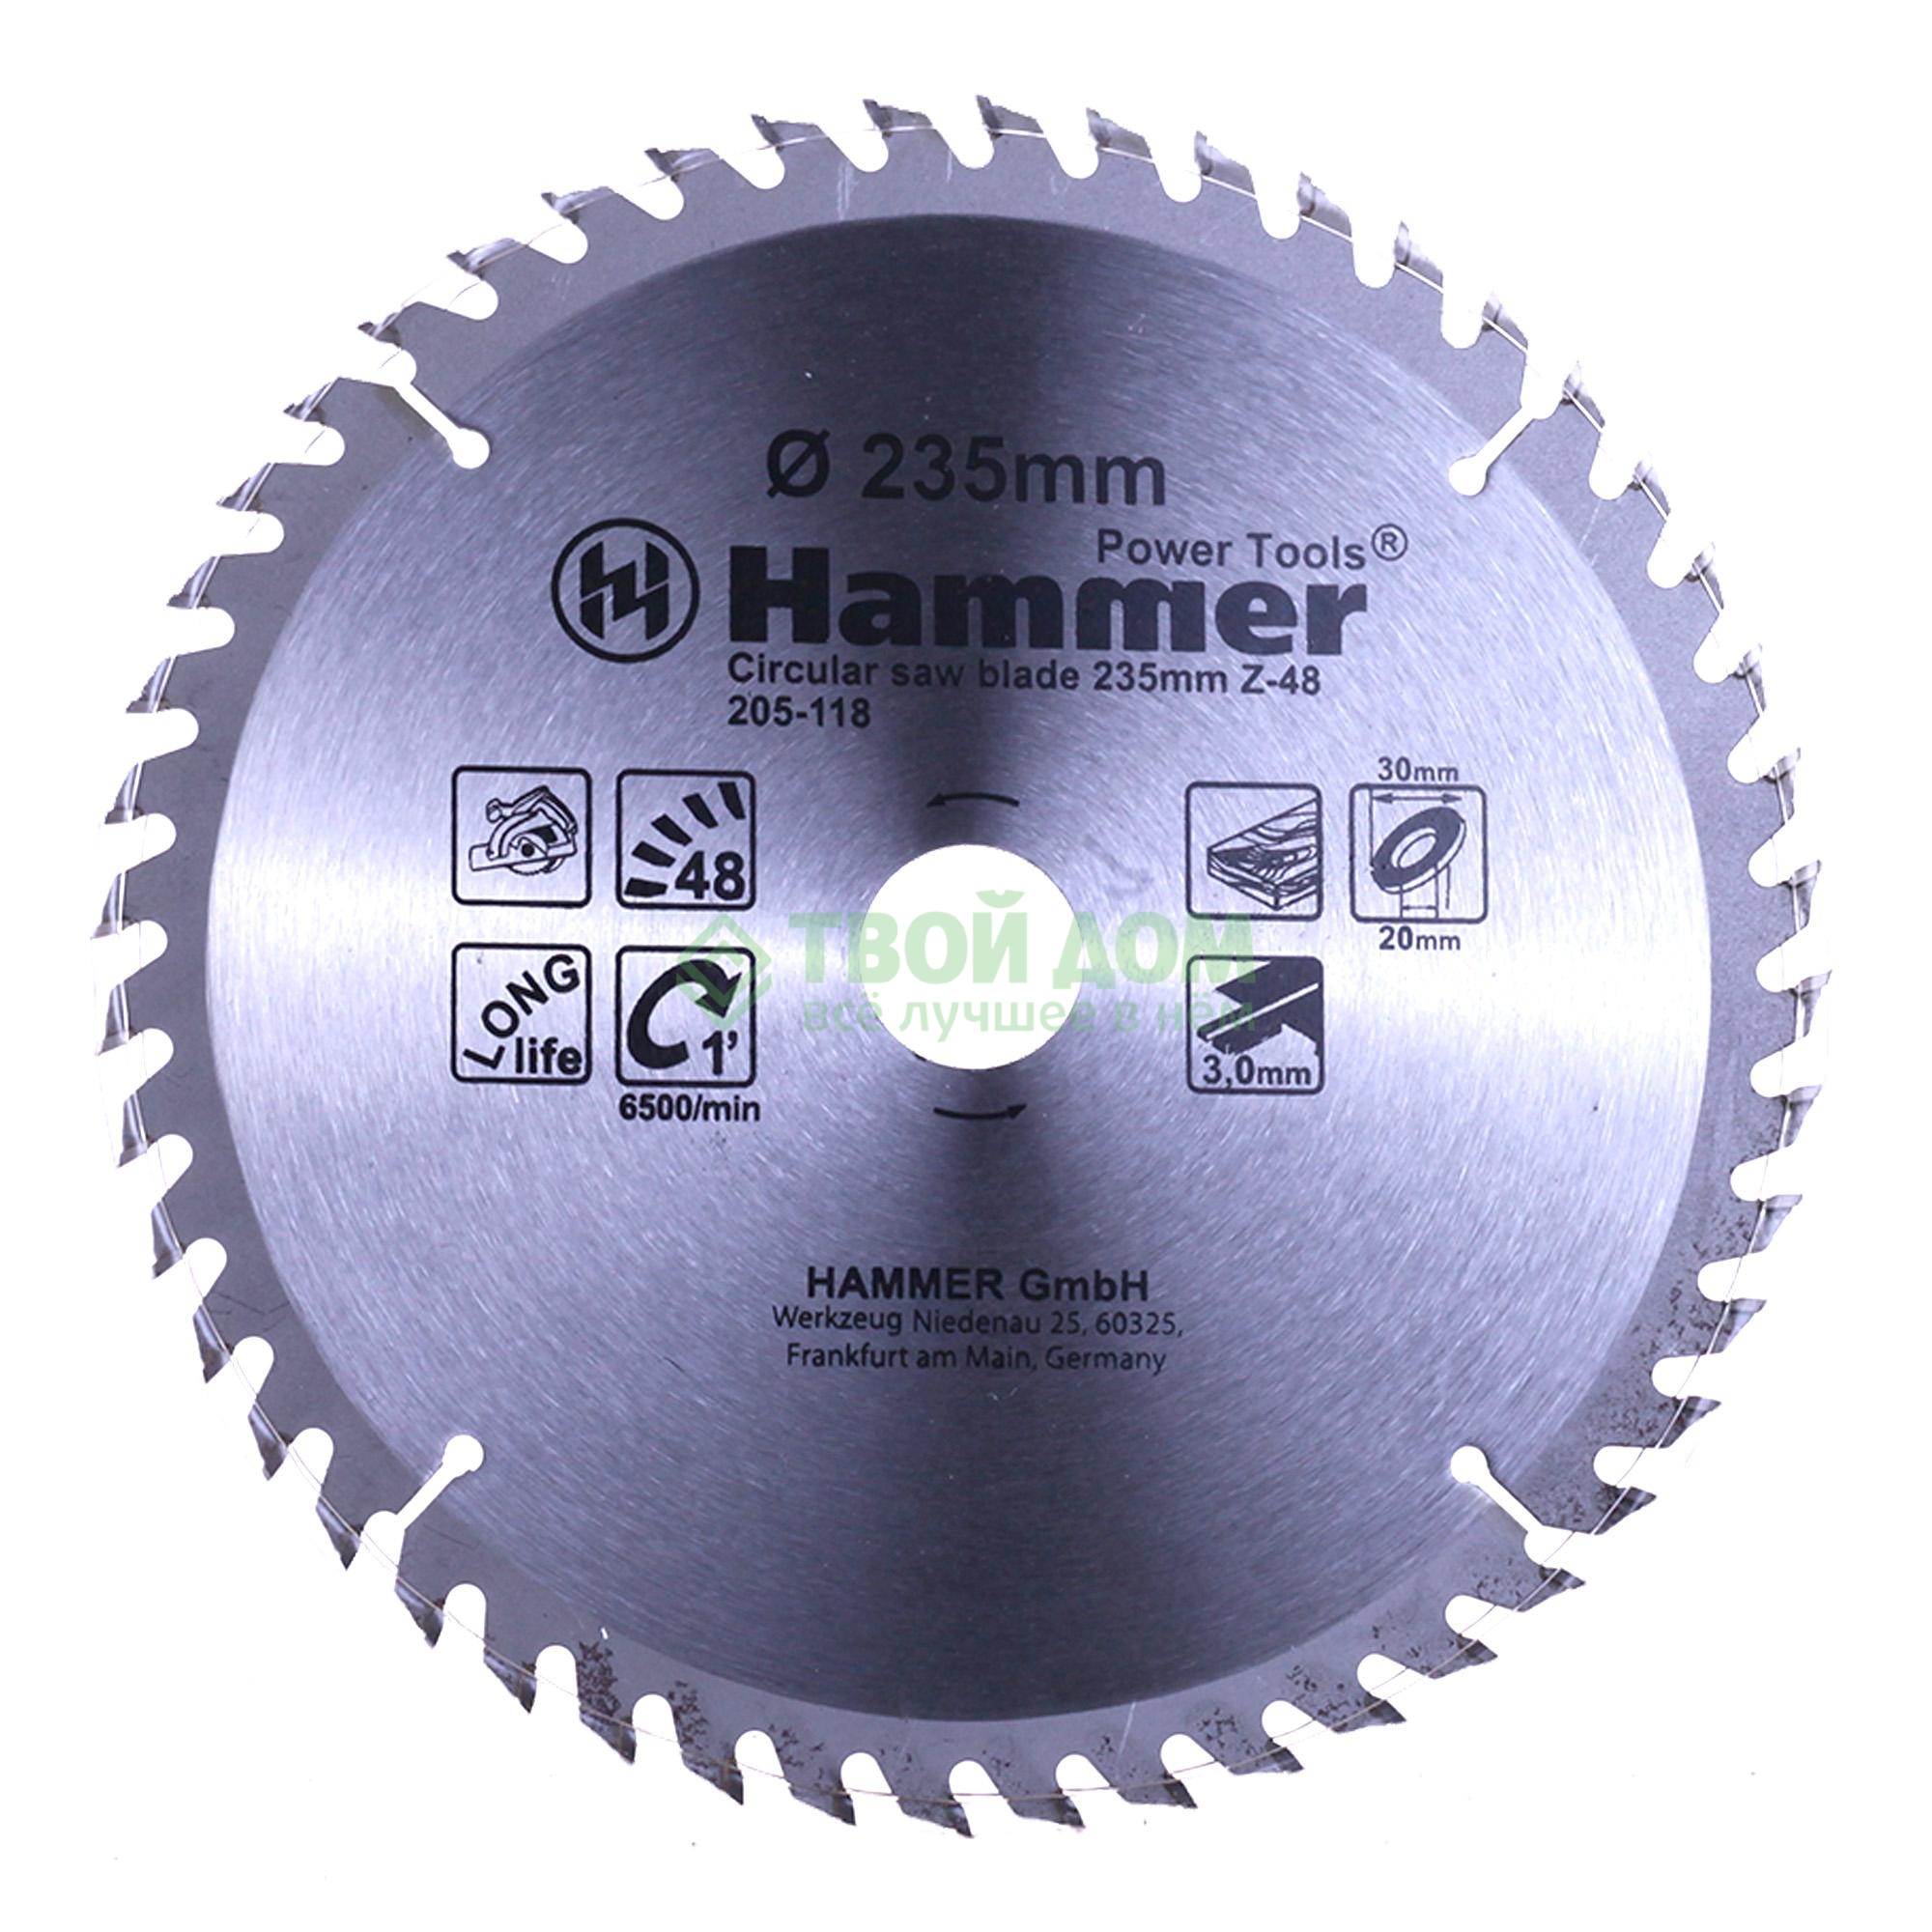 

Пильный диск Hammer 205-118 CSB WD 235мм